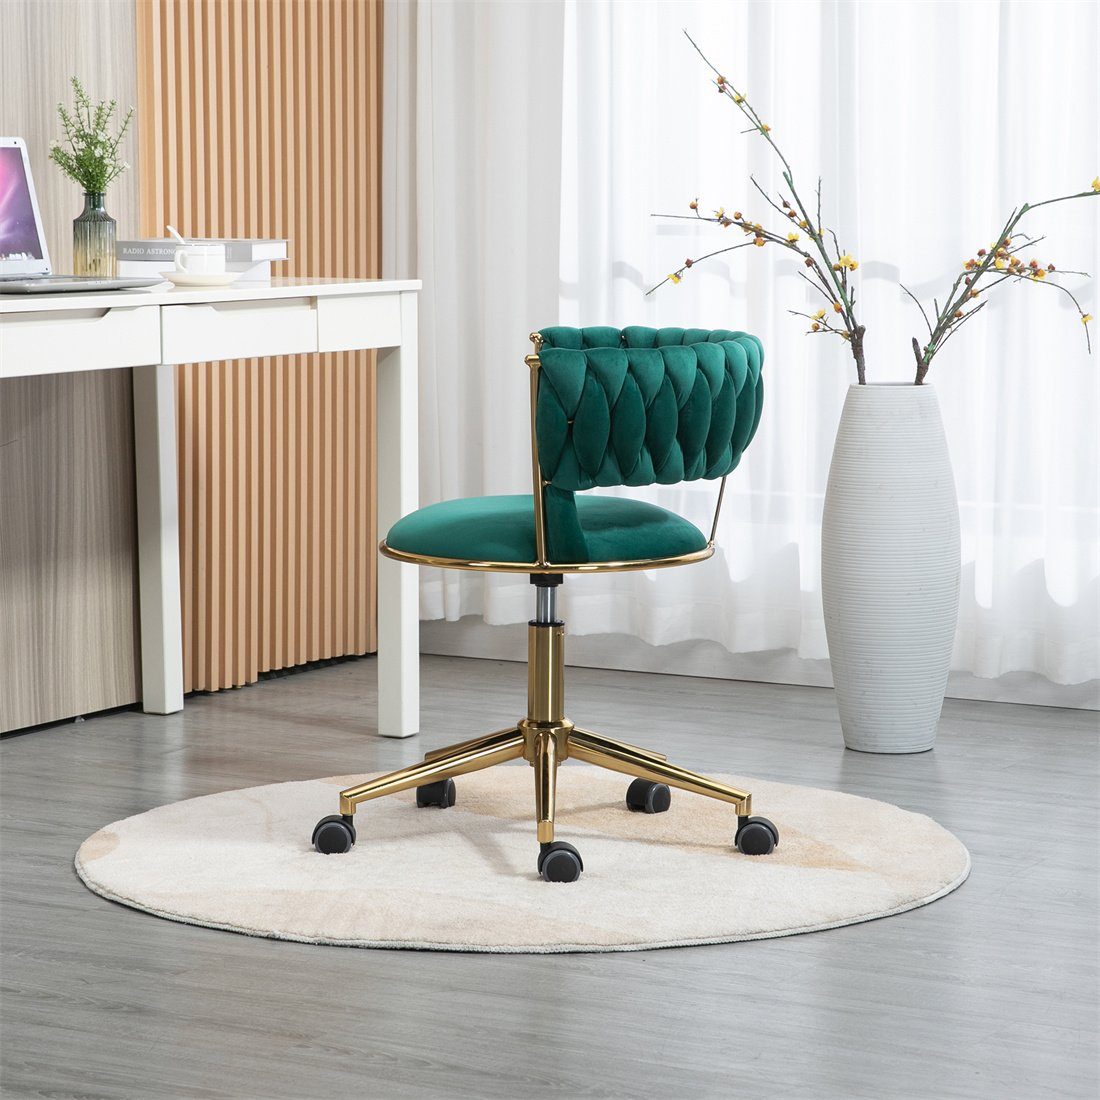 DÖRÖY Drehstuhl Home Office Chair,Kosmetikstuhl,Verstellbarer Computerstuhl,grün